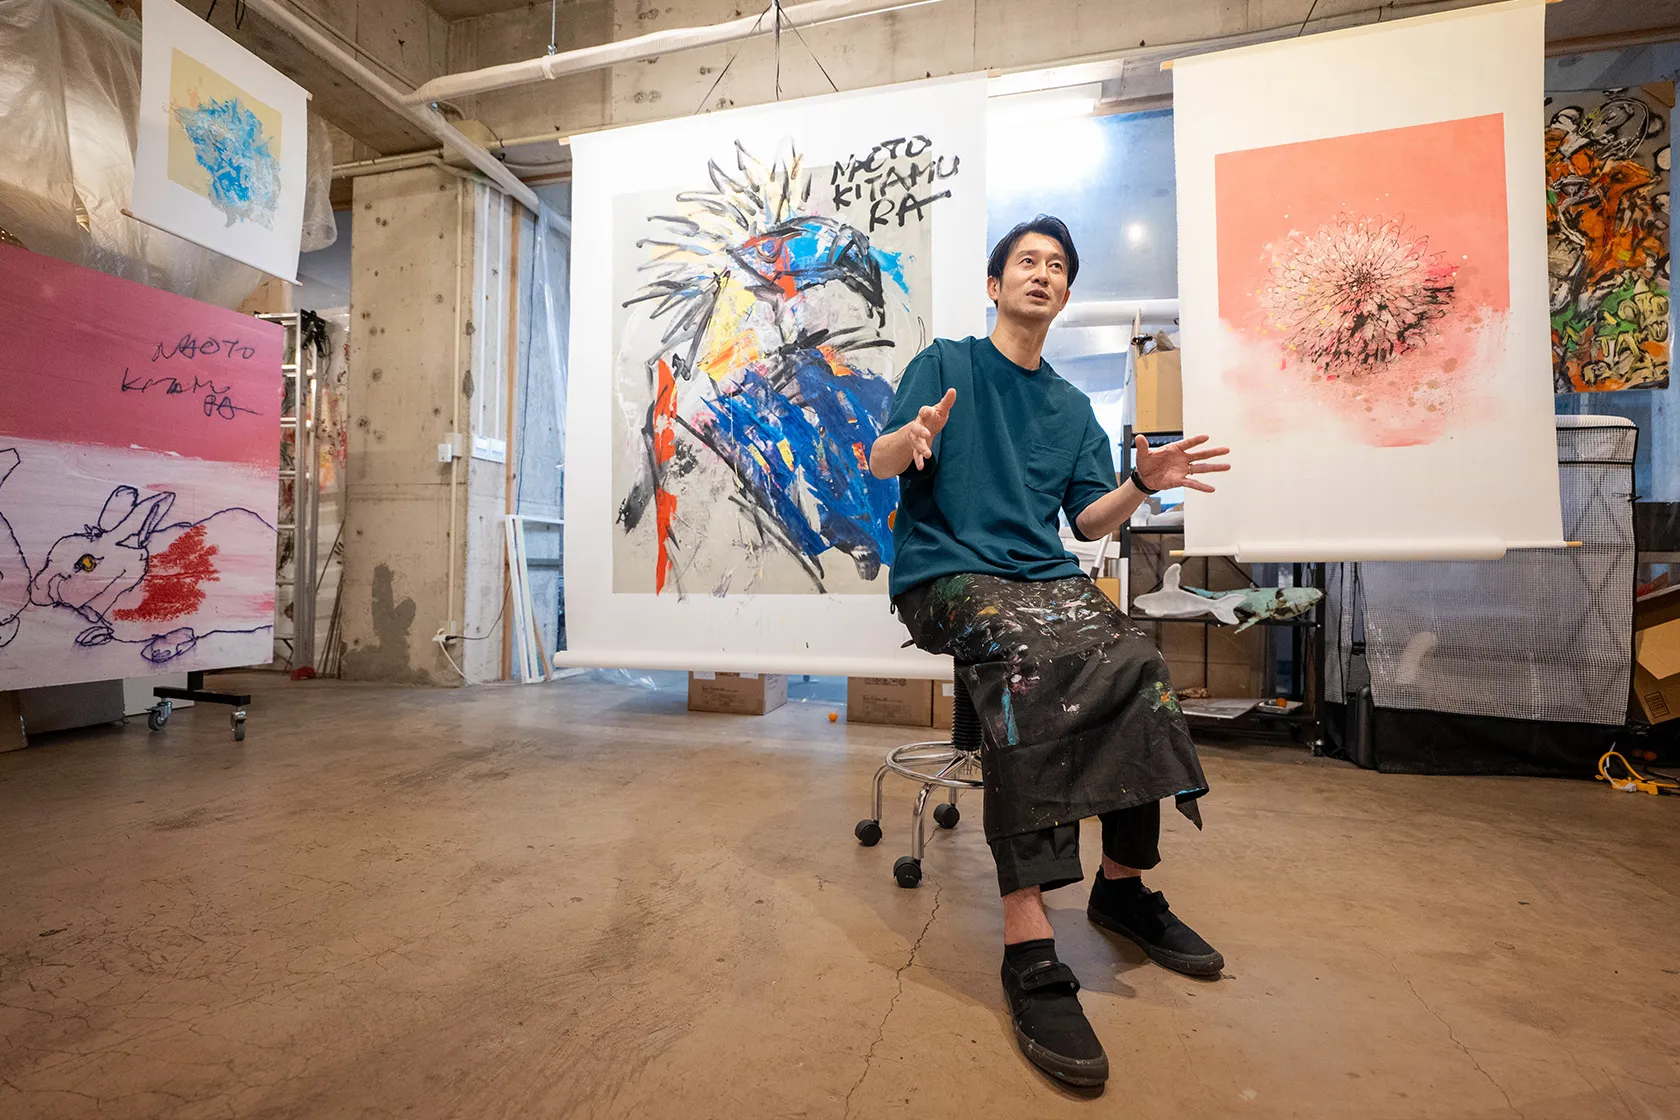 北村直登「“大分の画家”として、人々に望まれる作品を生み出し続けたい」